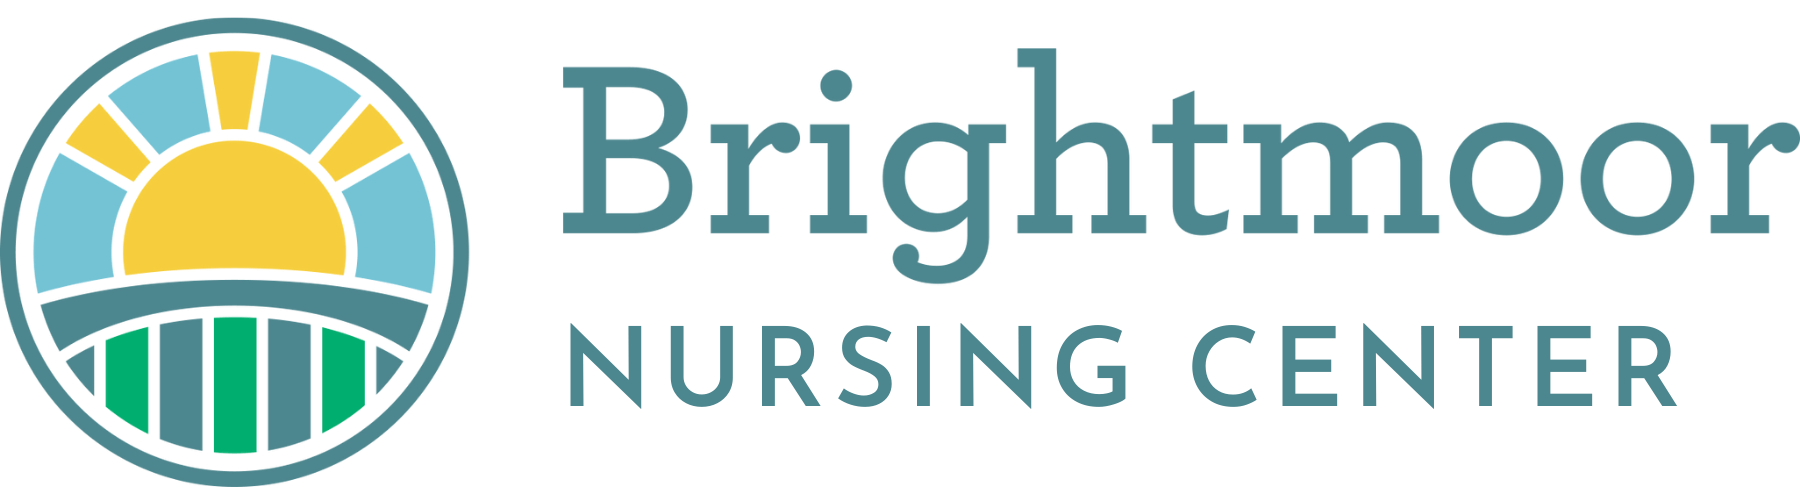 Brightmoor Nursing Center - Logo